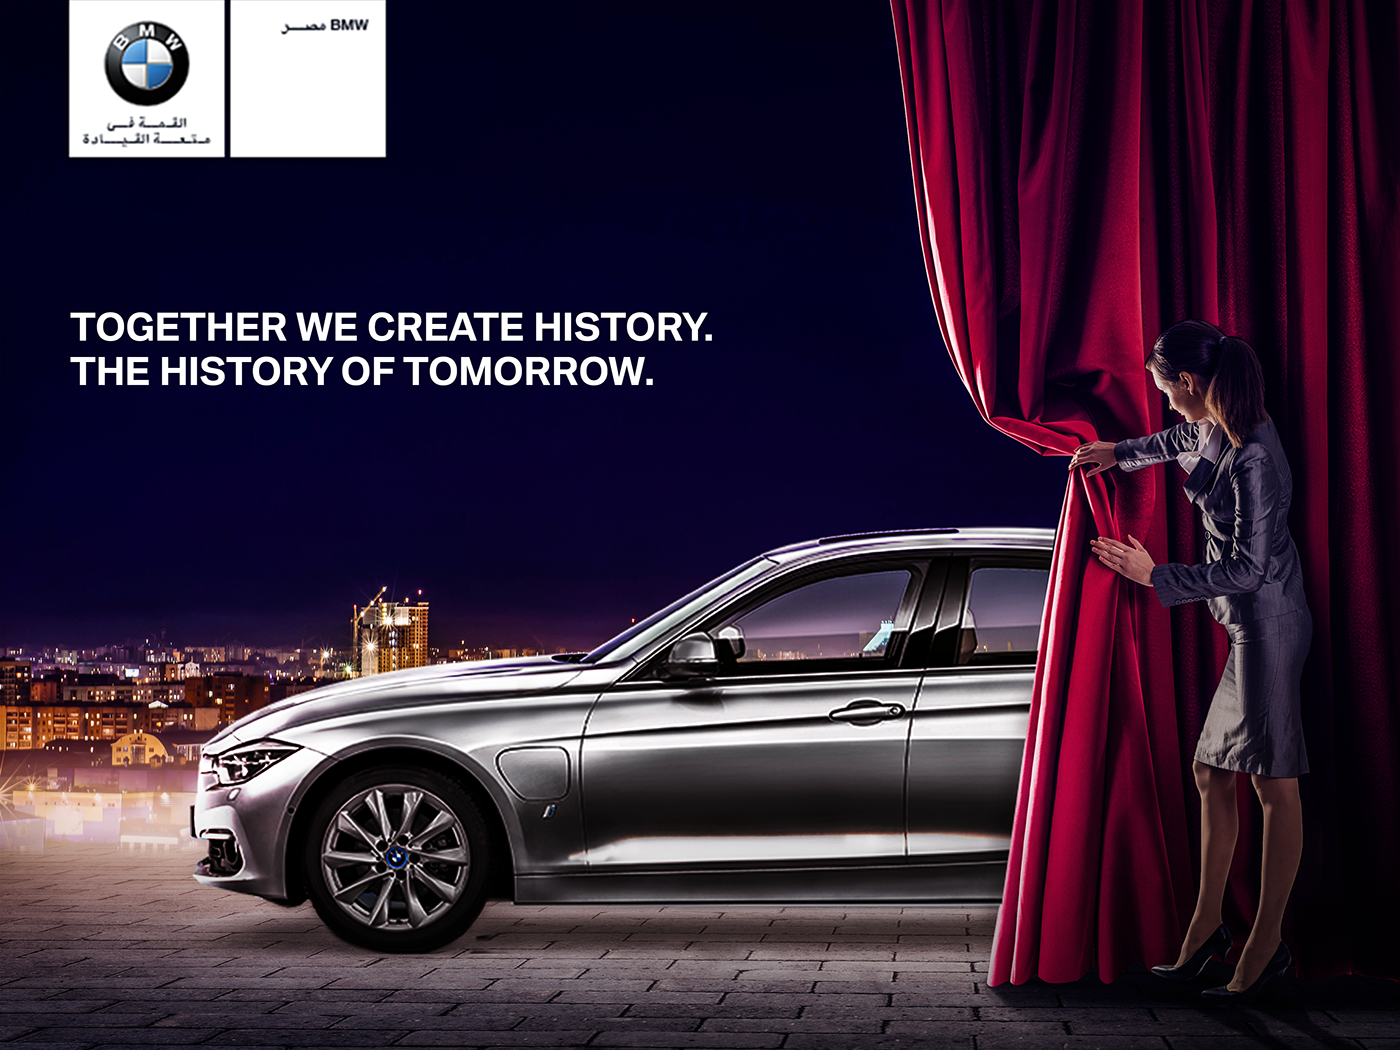 Реклама x6. Реклама на машине. Печатная реклама автомобилей. Слоганы машин. Рекламный плакат BMW.